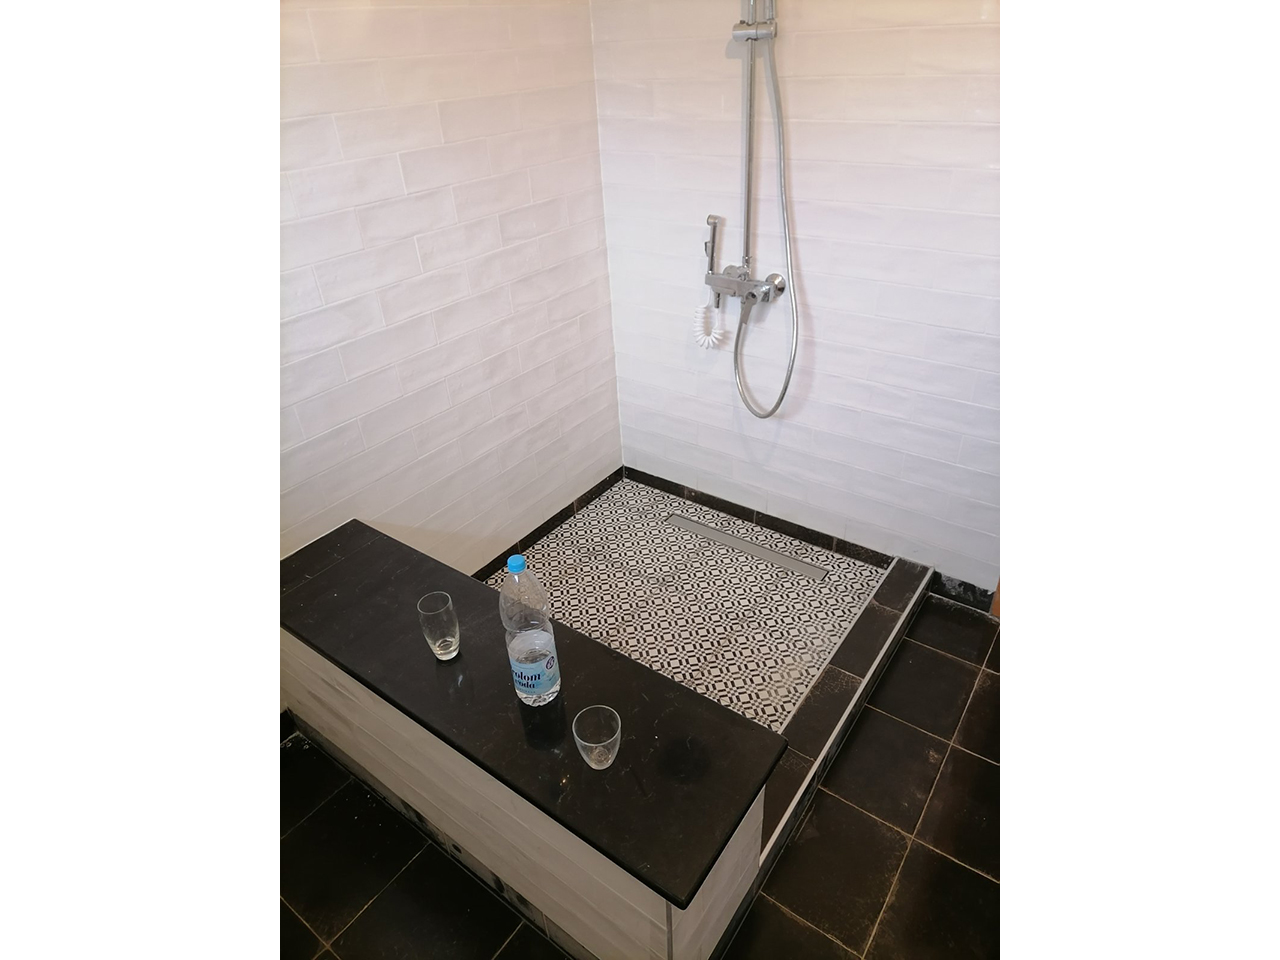 Photo 2 - KERAMICAR MITRIC - Bathrooms, bathroom accessories, ceramic, Novi Sad